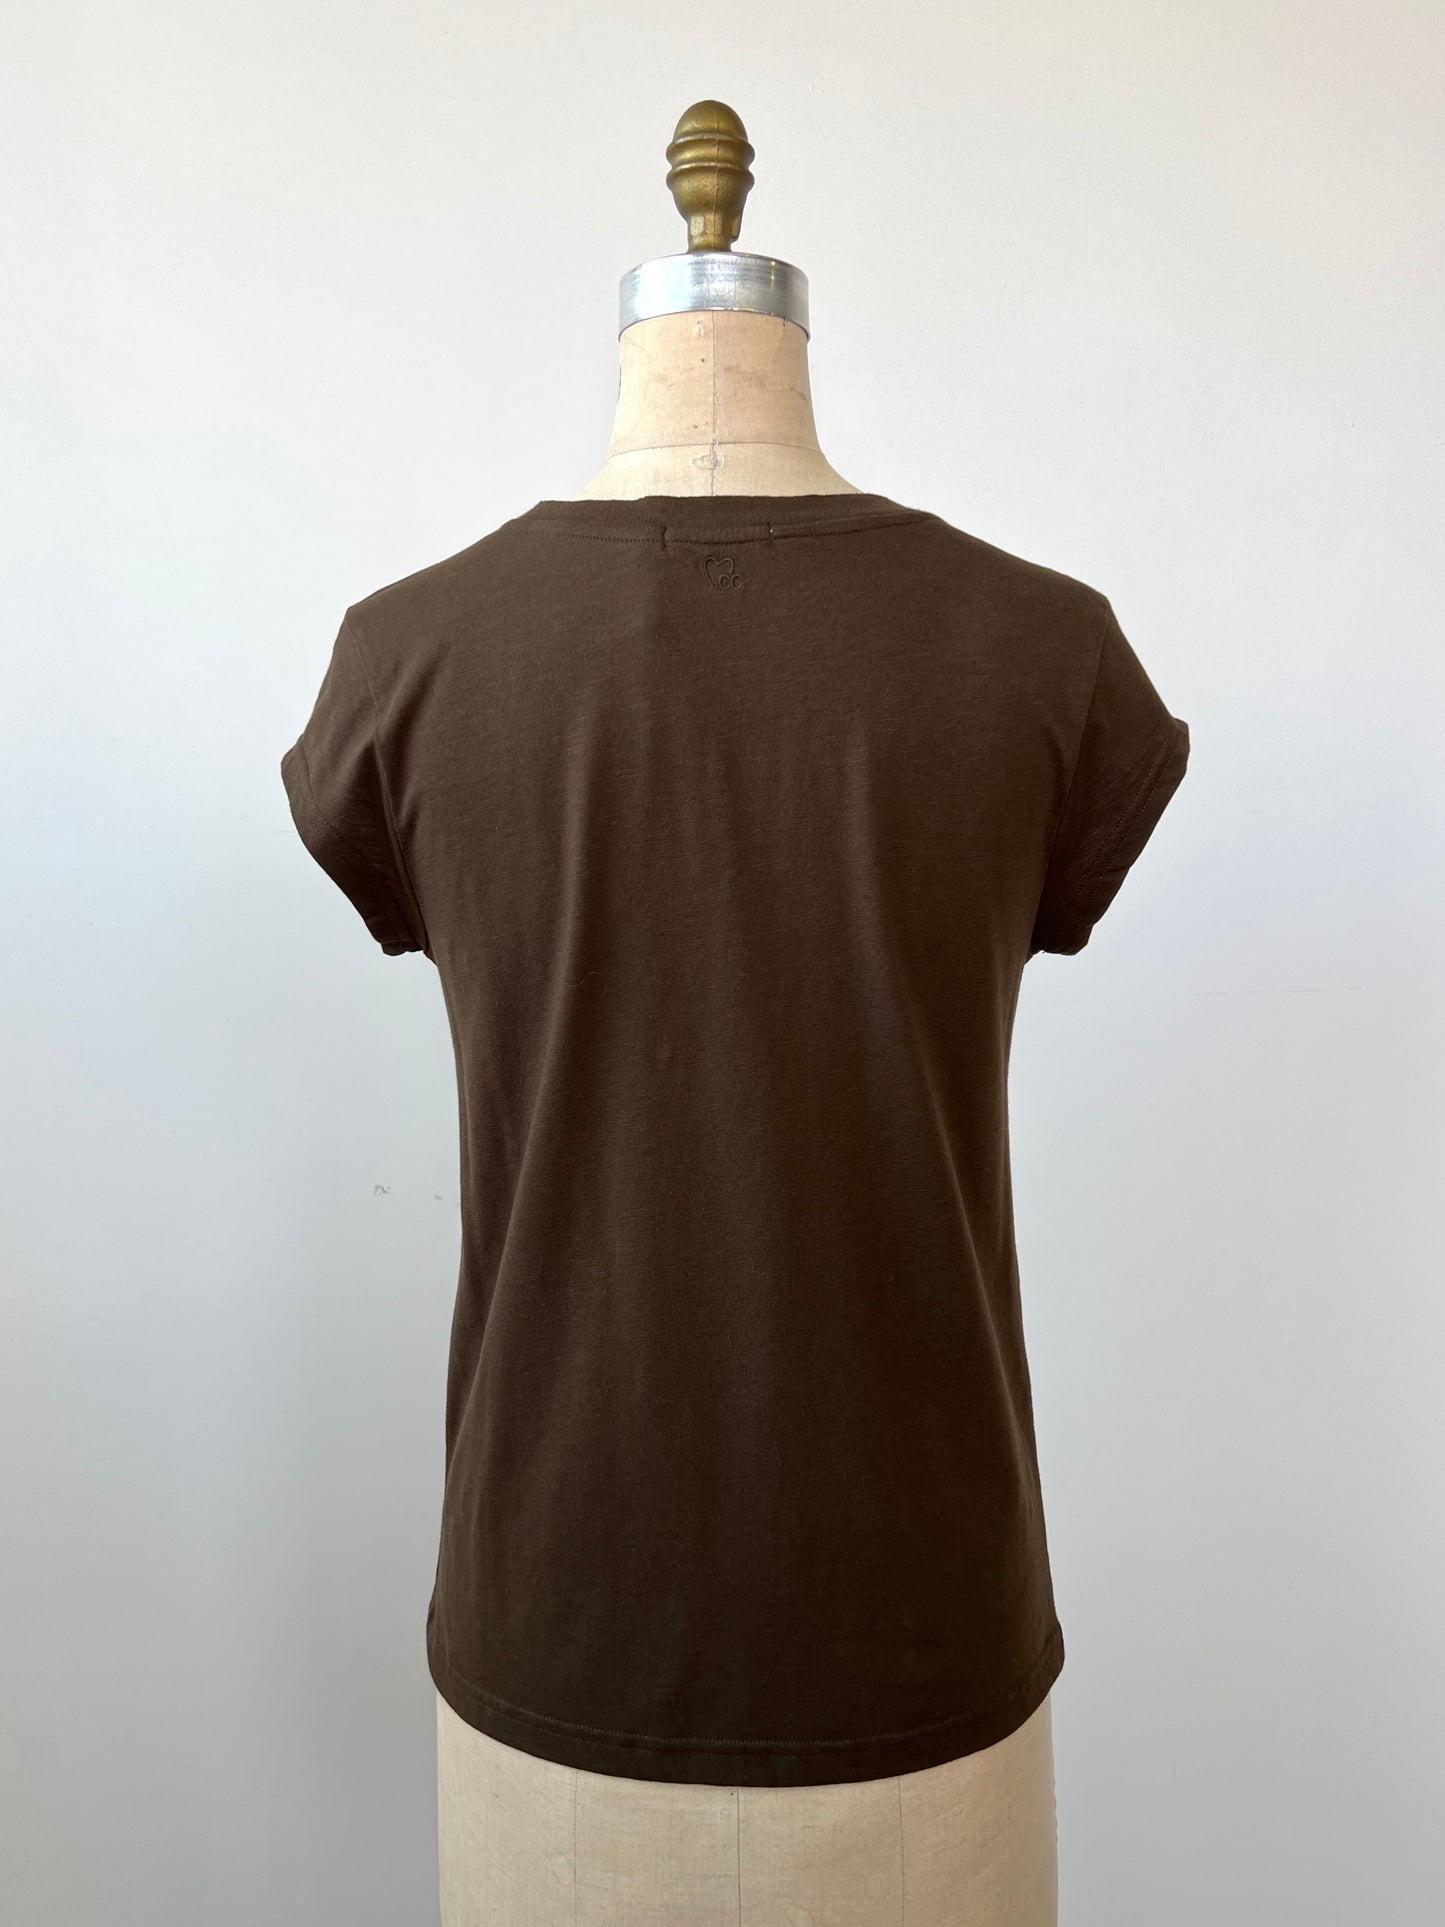 T-shirt en tissage tramé brun olive (S)